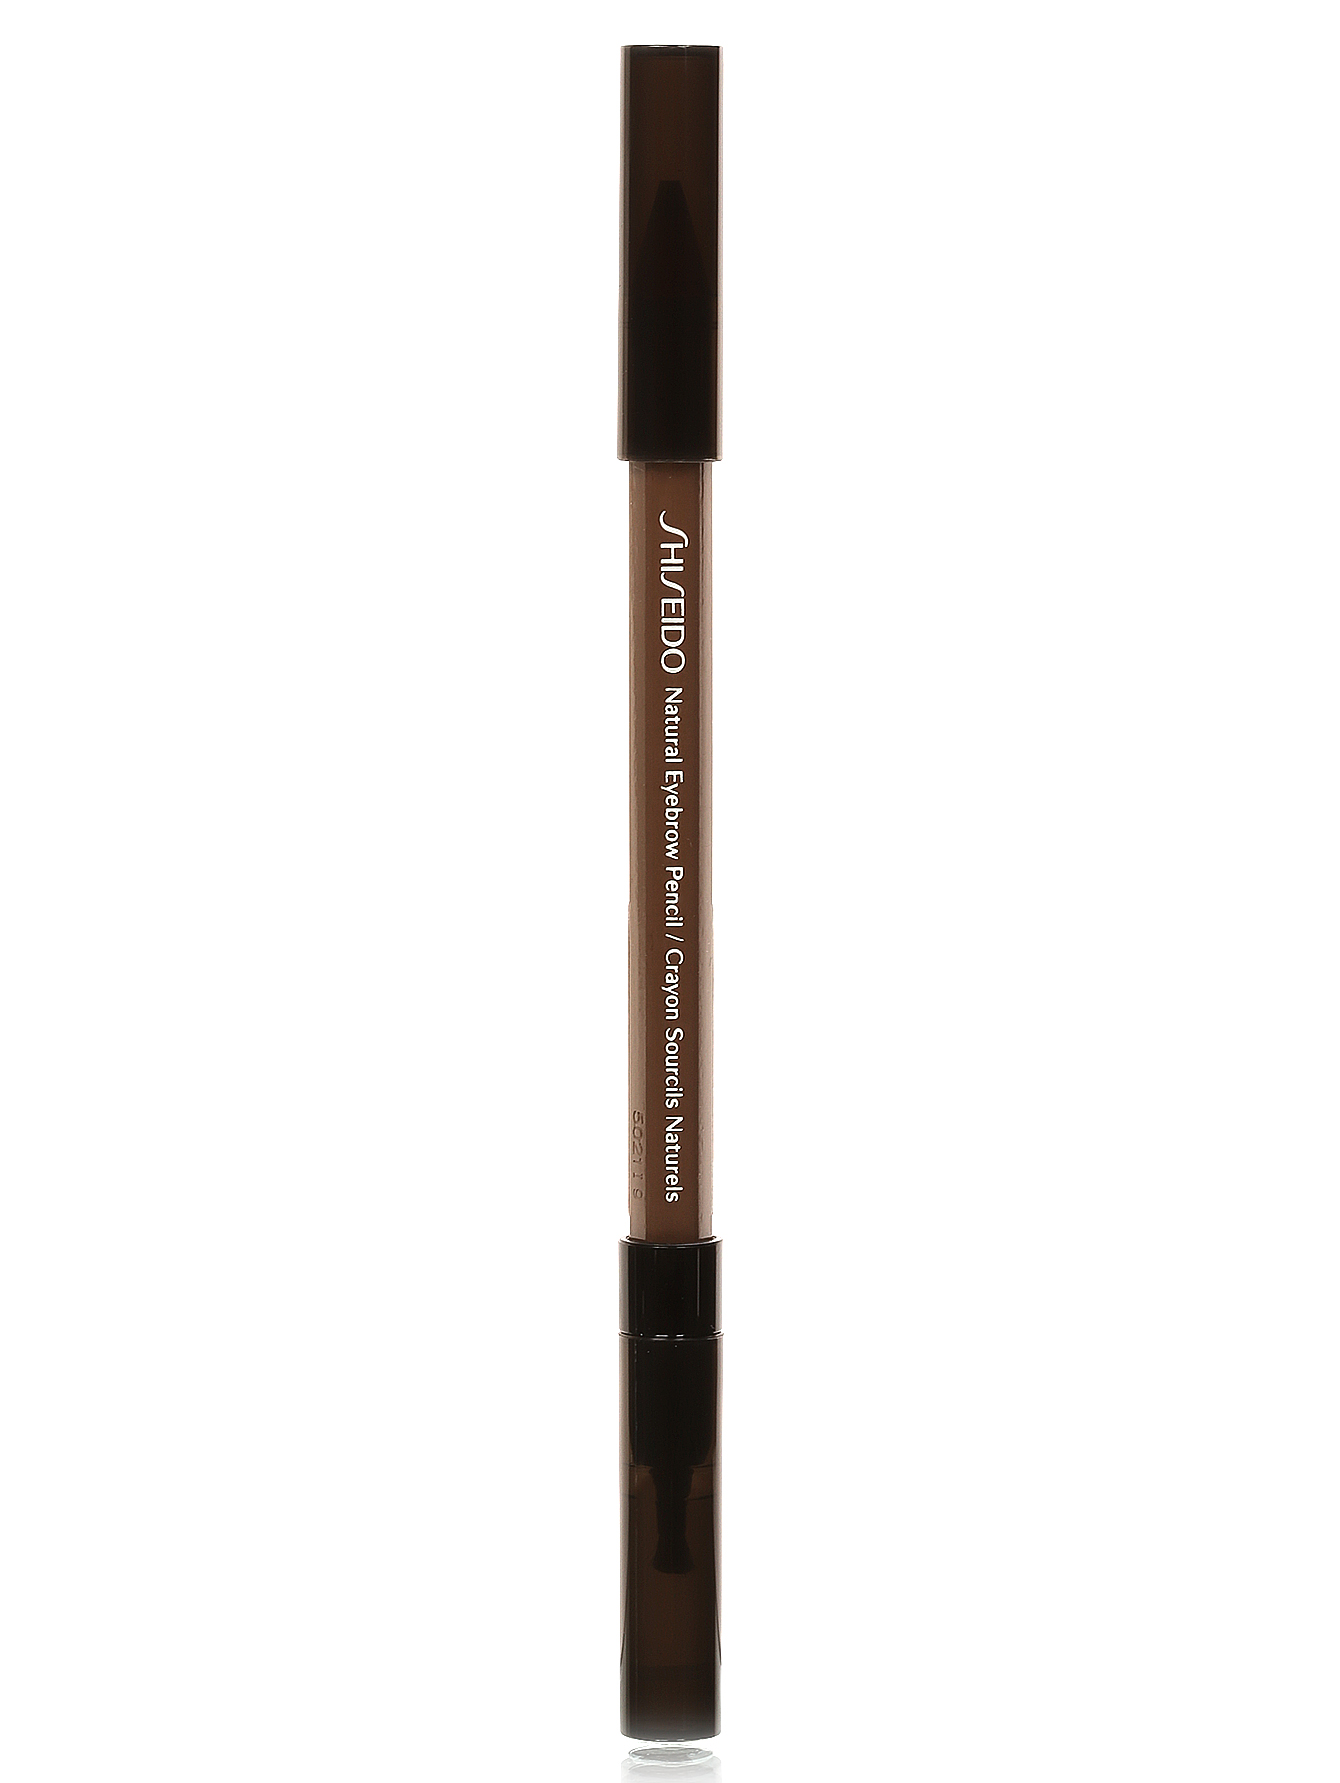 Натуральный карандаш для бровей - BR603, Eyebrow Pencil - Модель Верх-Низ